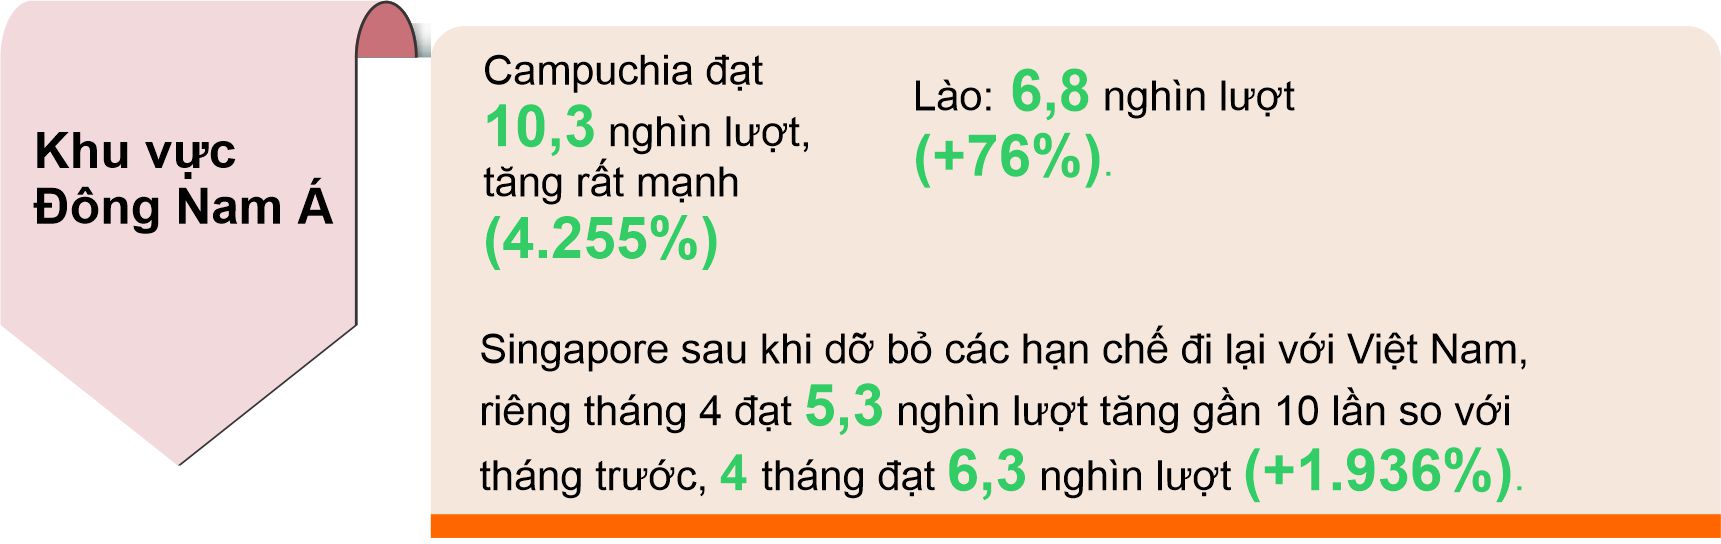 4 tháng đầu năm khách quốc tế đến Việt Nam tăng 284,7% so với cùng kỳ - Ảnh 5.